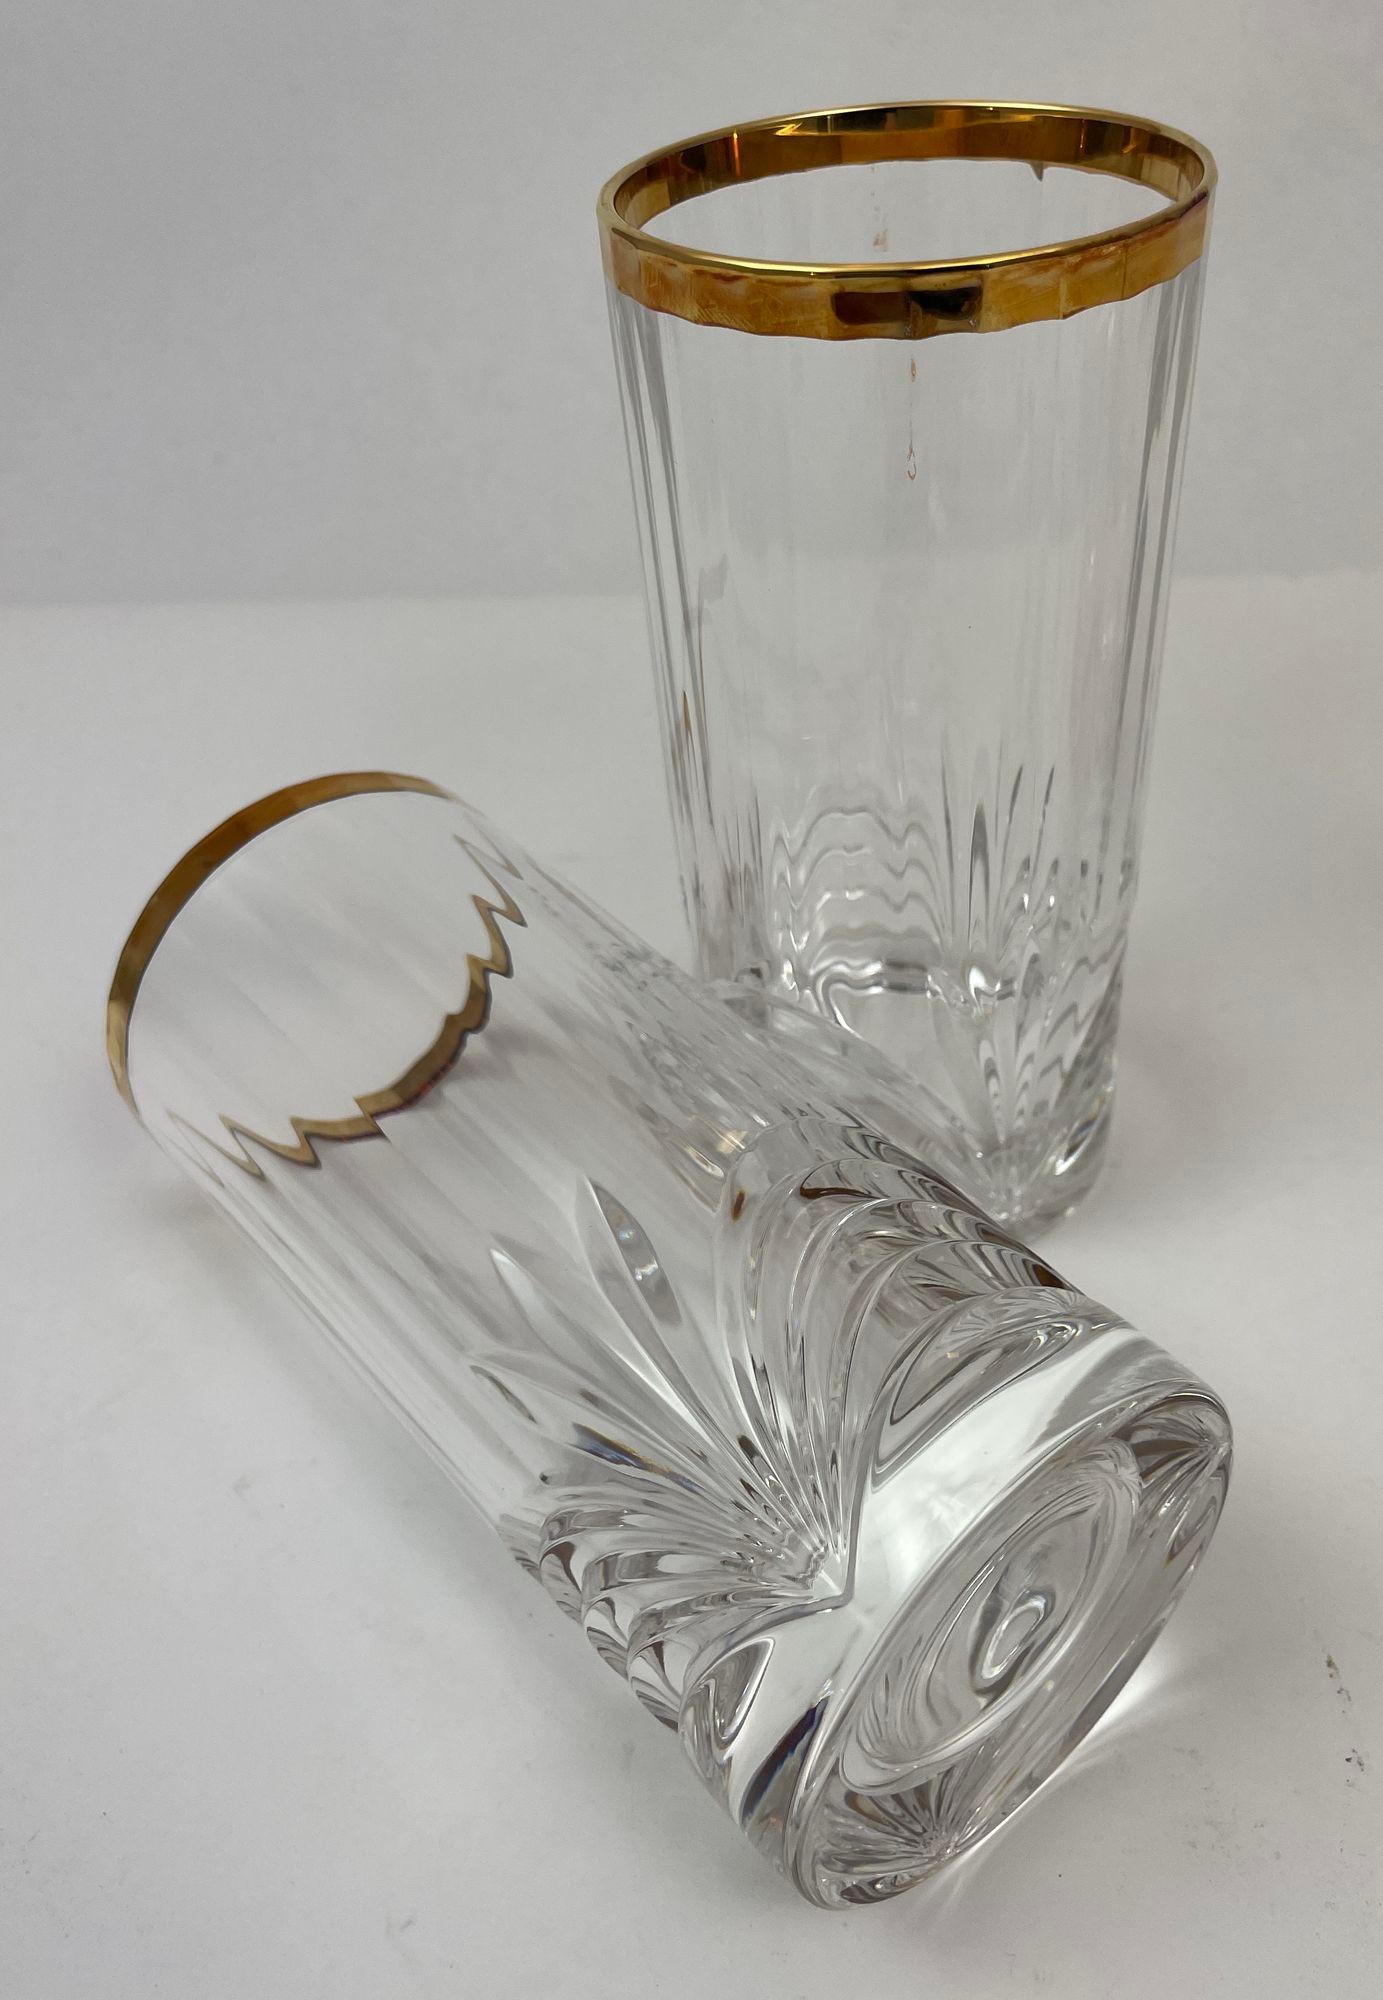 Royal Crystal Rock Aurea Tumbler Highball Glasses in Box Vintage Set of 6 For Sale 9